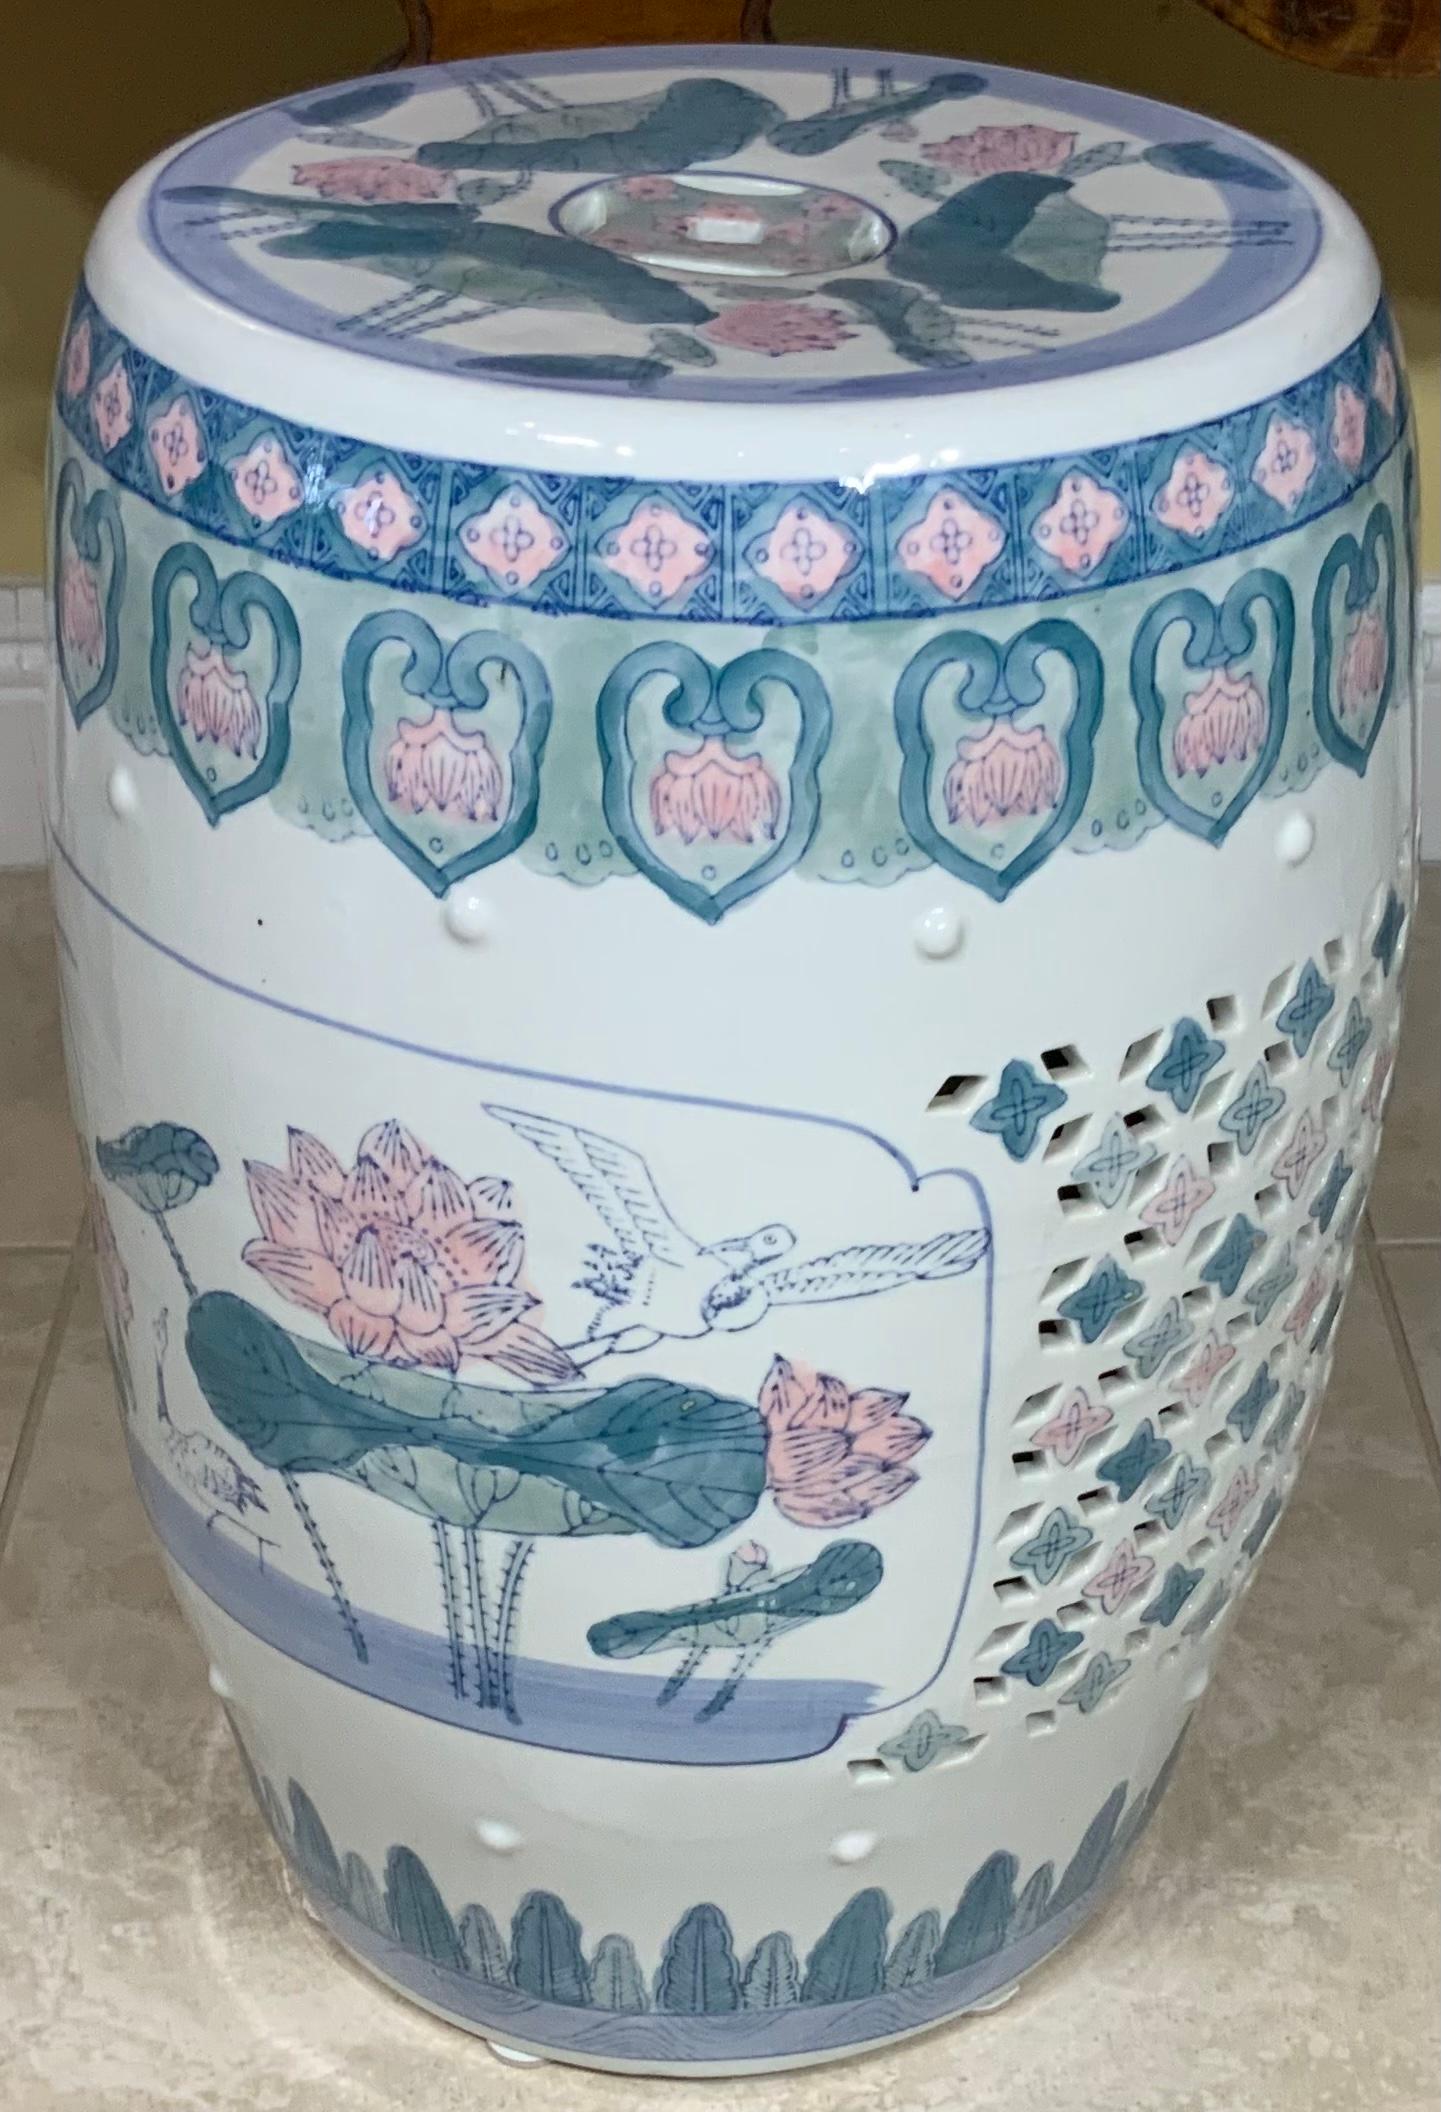 1980 Chinese Ceramic Garden Stool 2